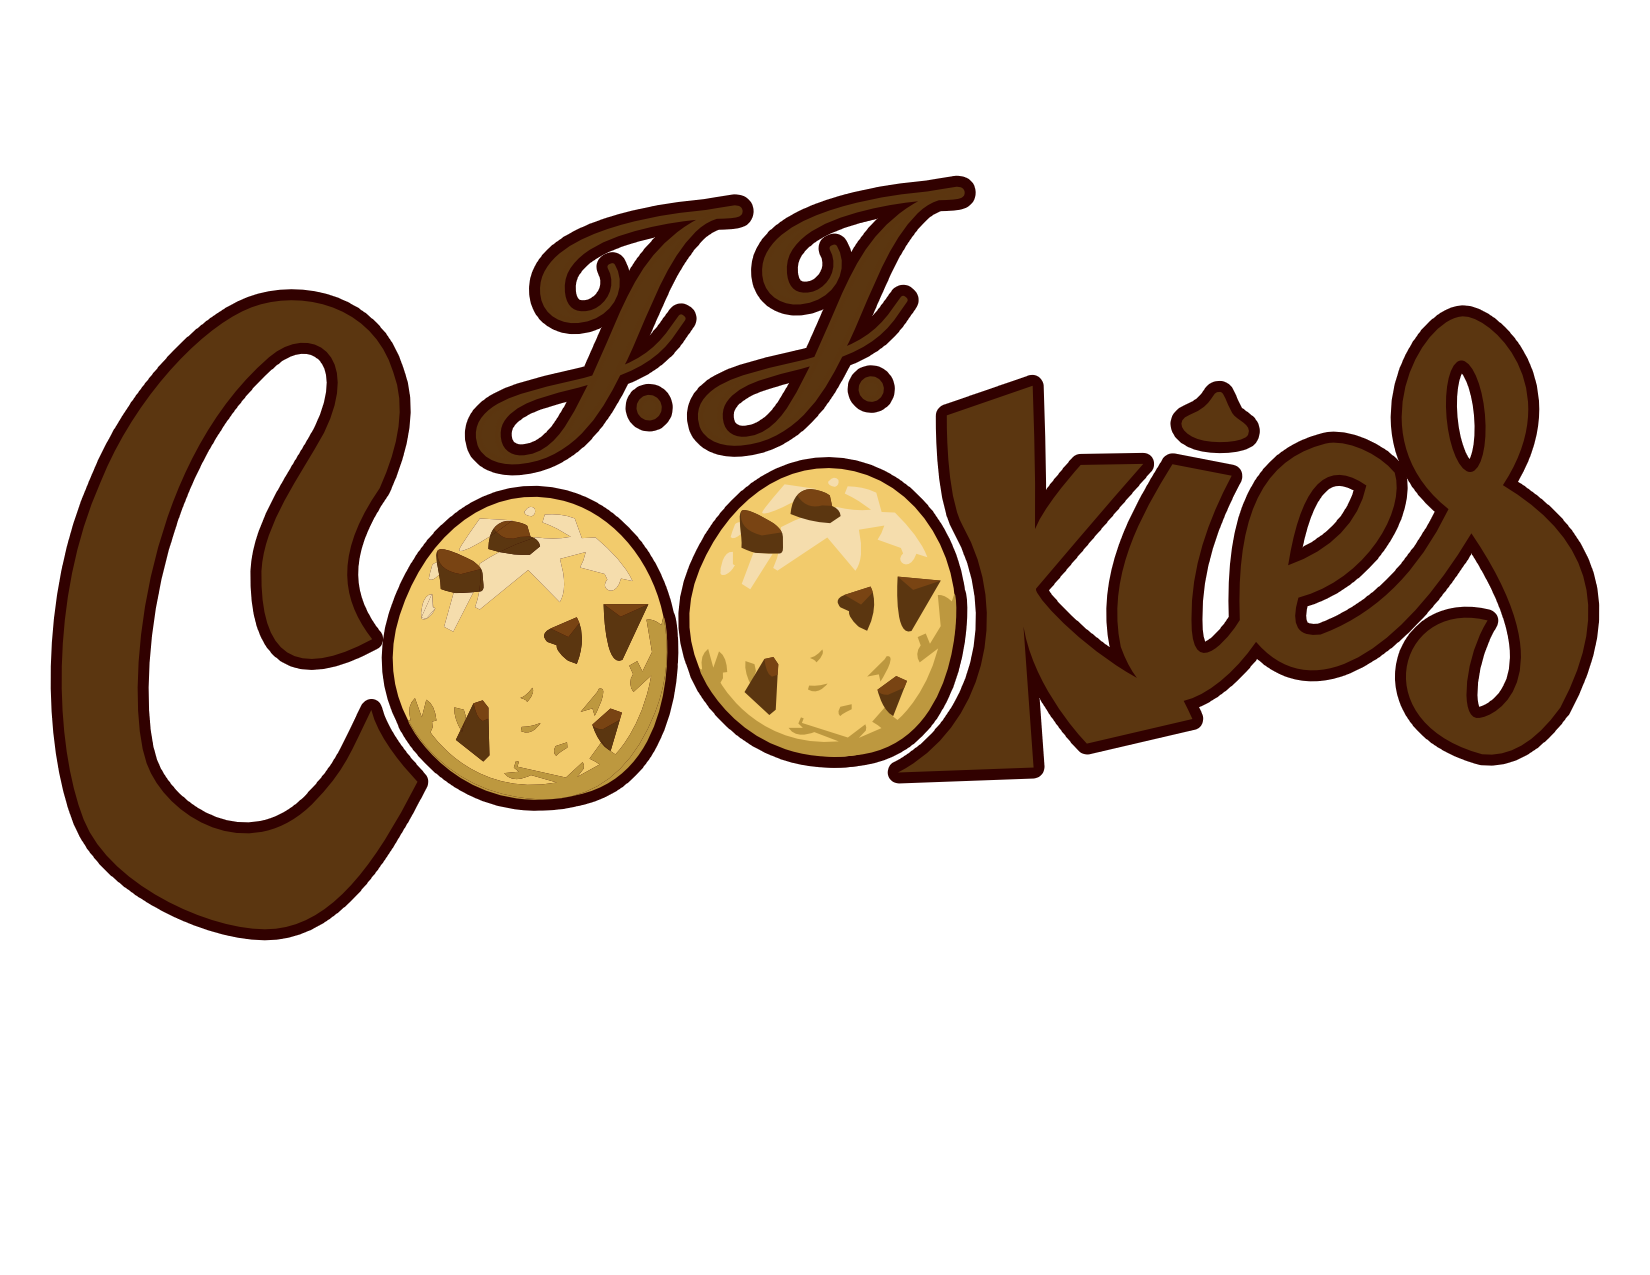 JJ Cookies